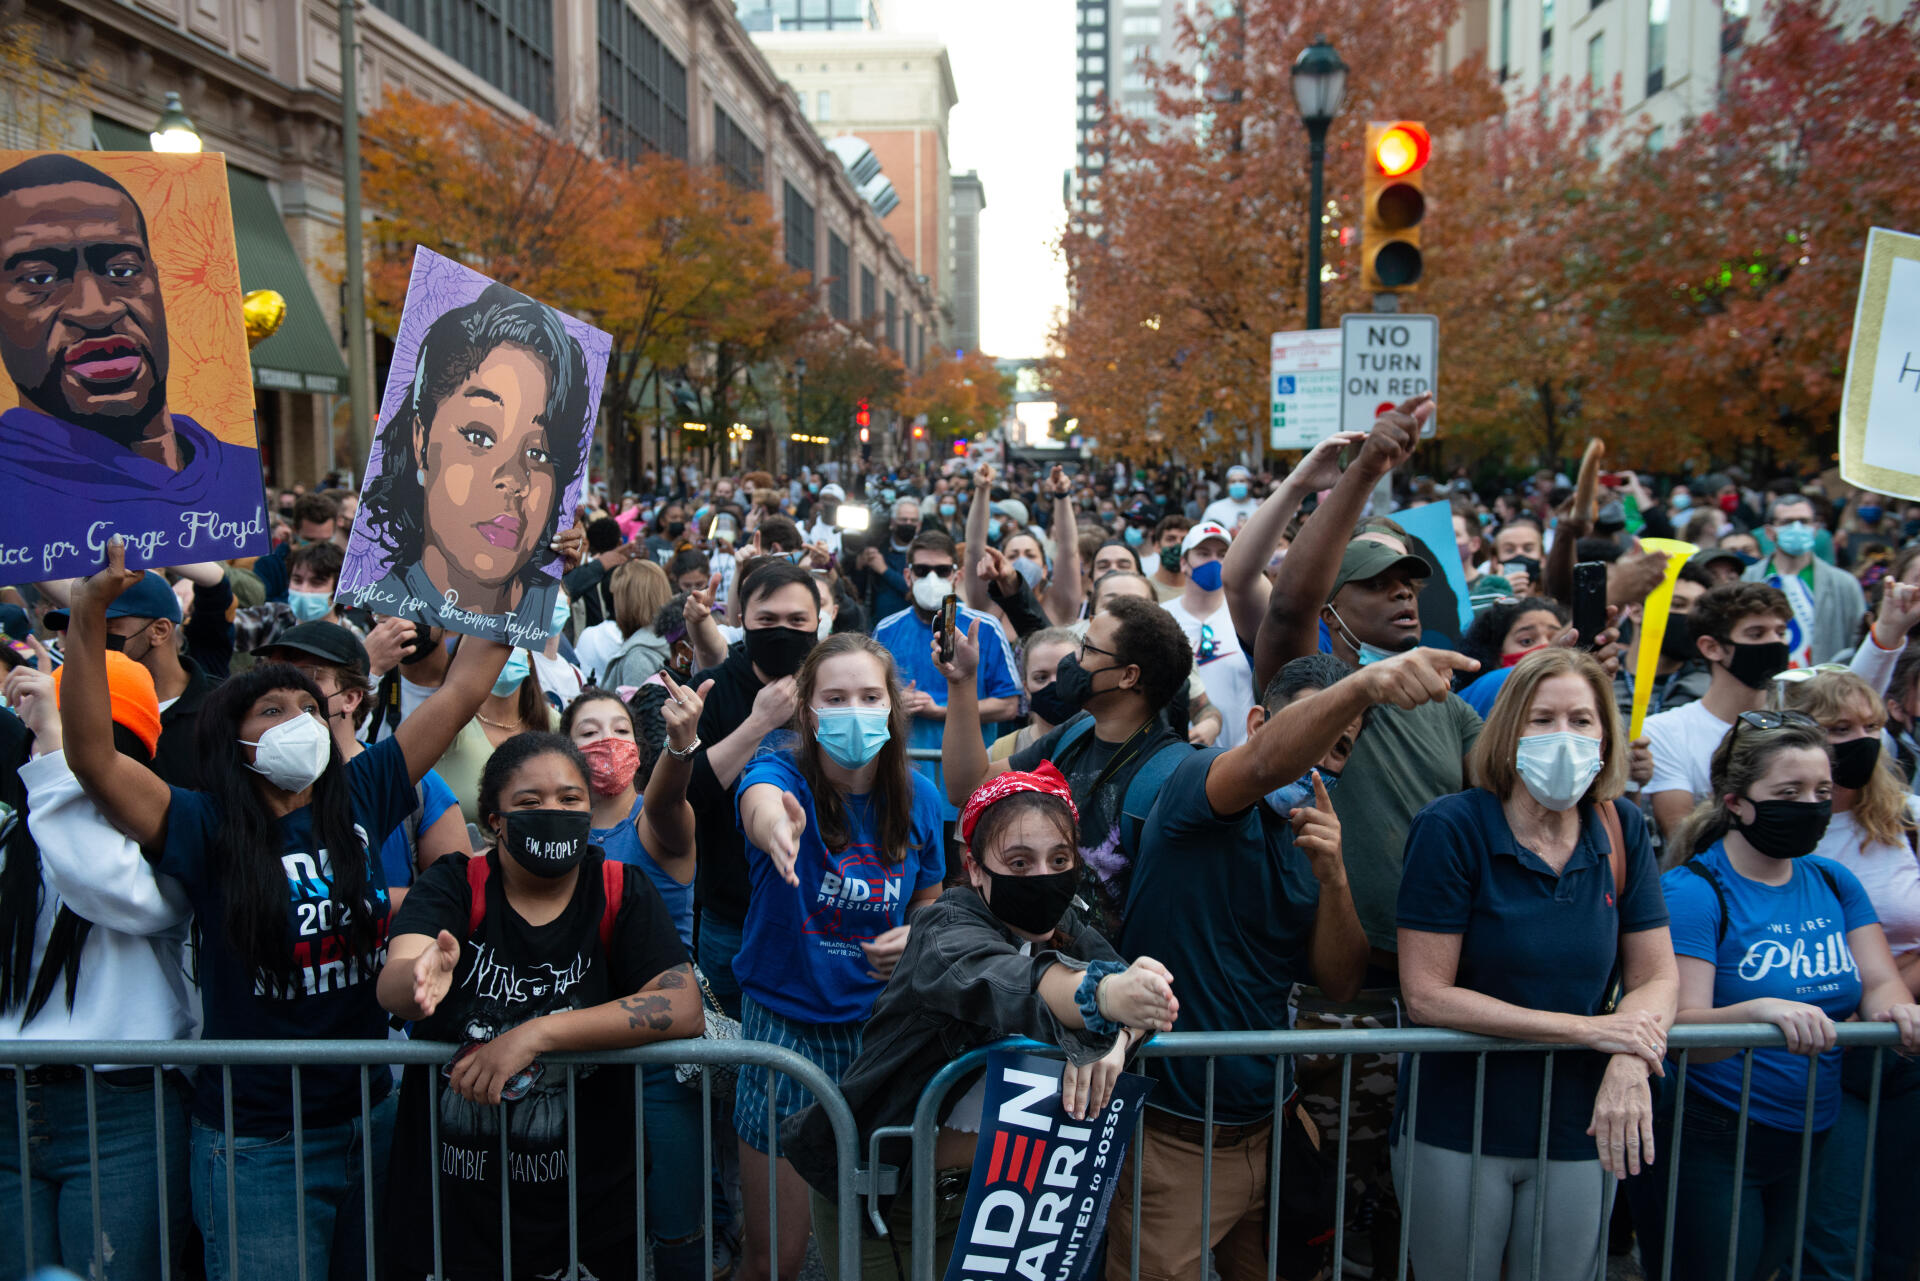 Des supporteurs de Joe Biden font face à des pro-Trump devant le Convention Center où a lieu le comptage des votes. Les résidents de Philadelphie célèbrent la victoire du candidat démocrate.